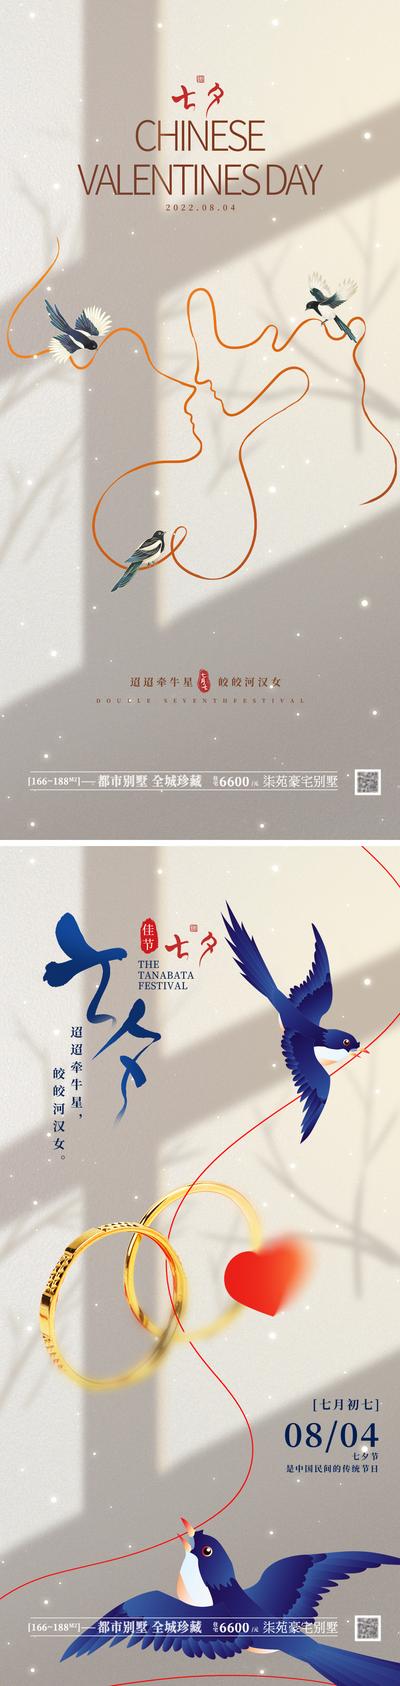 南门网 海报 房地产 中国传统节日 七夕 情人节 甜蜜 线条 国潮 喜鹊 鹊桥